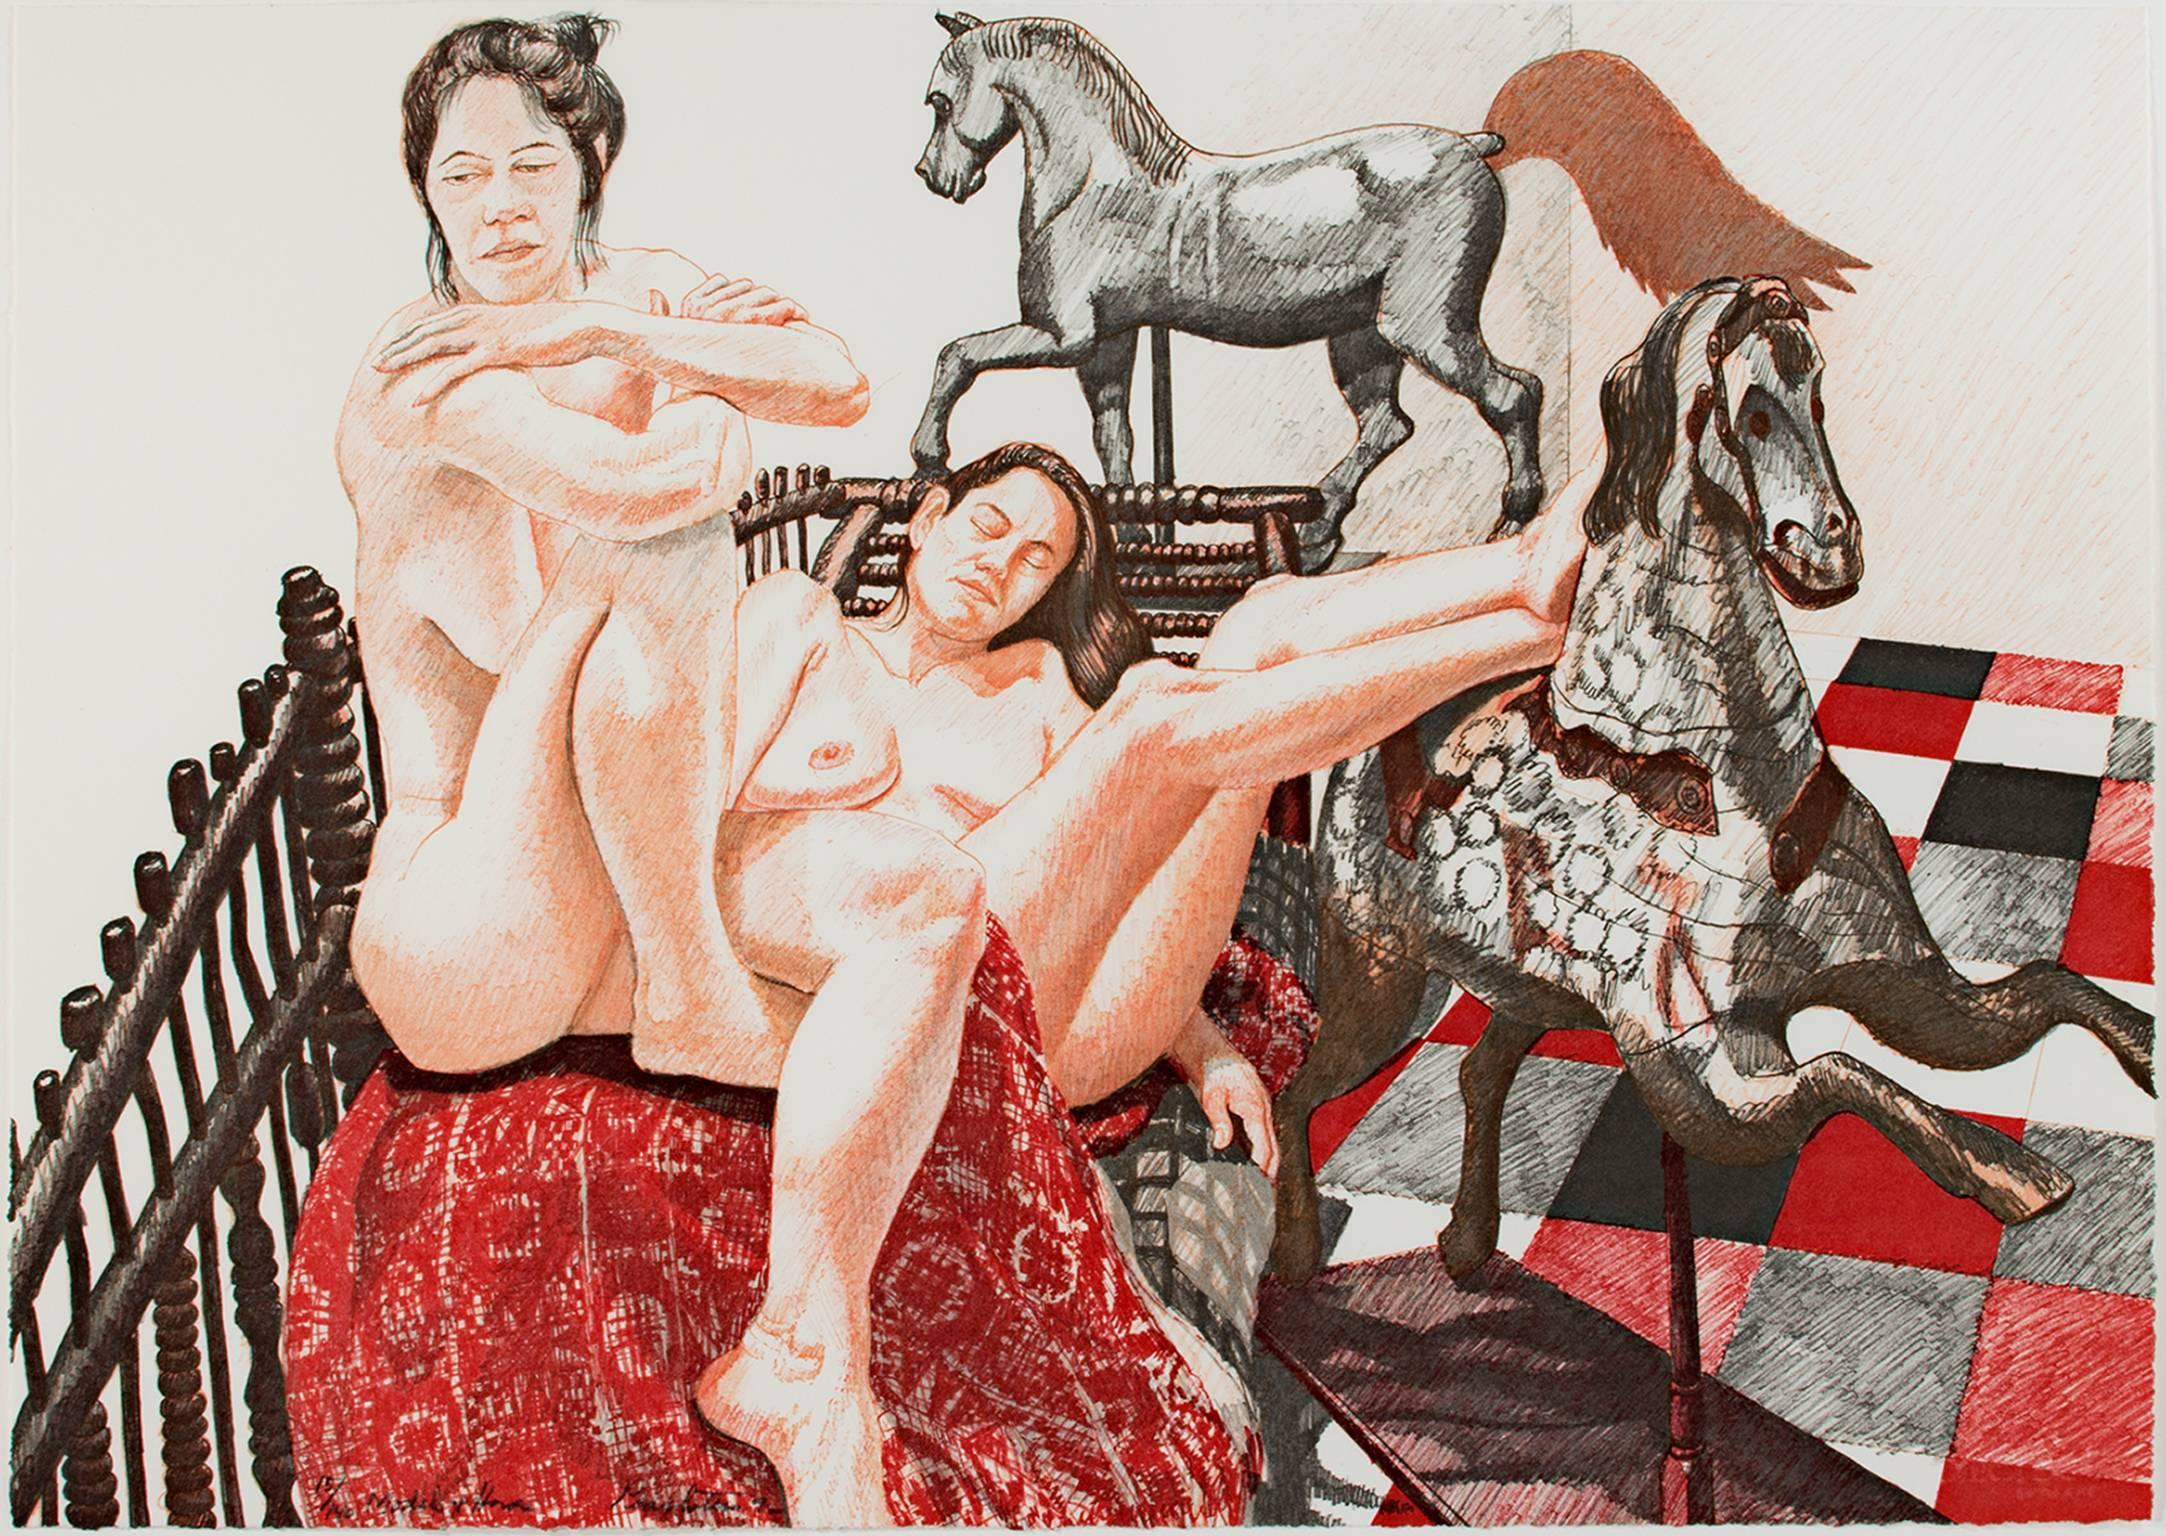 "Models & Horses" ist eine originale Farblithographie von Philip Pearlstein. Der Künstler hat das Werk unten links signiert und es ist die Auflage 15/140. Dieses Stück zeigt zwei nackte weibliche Modelle, die sich mit Pferderequisiten räkeln. Die